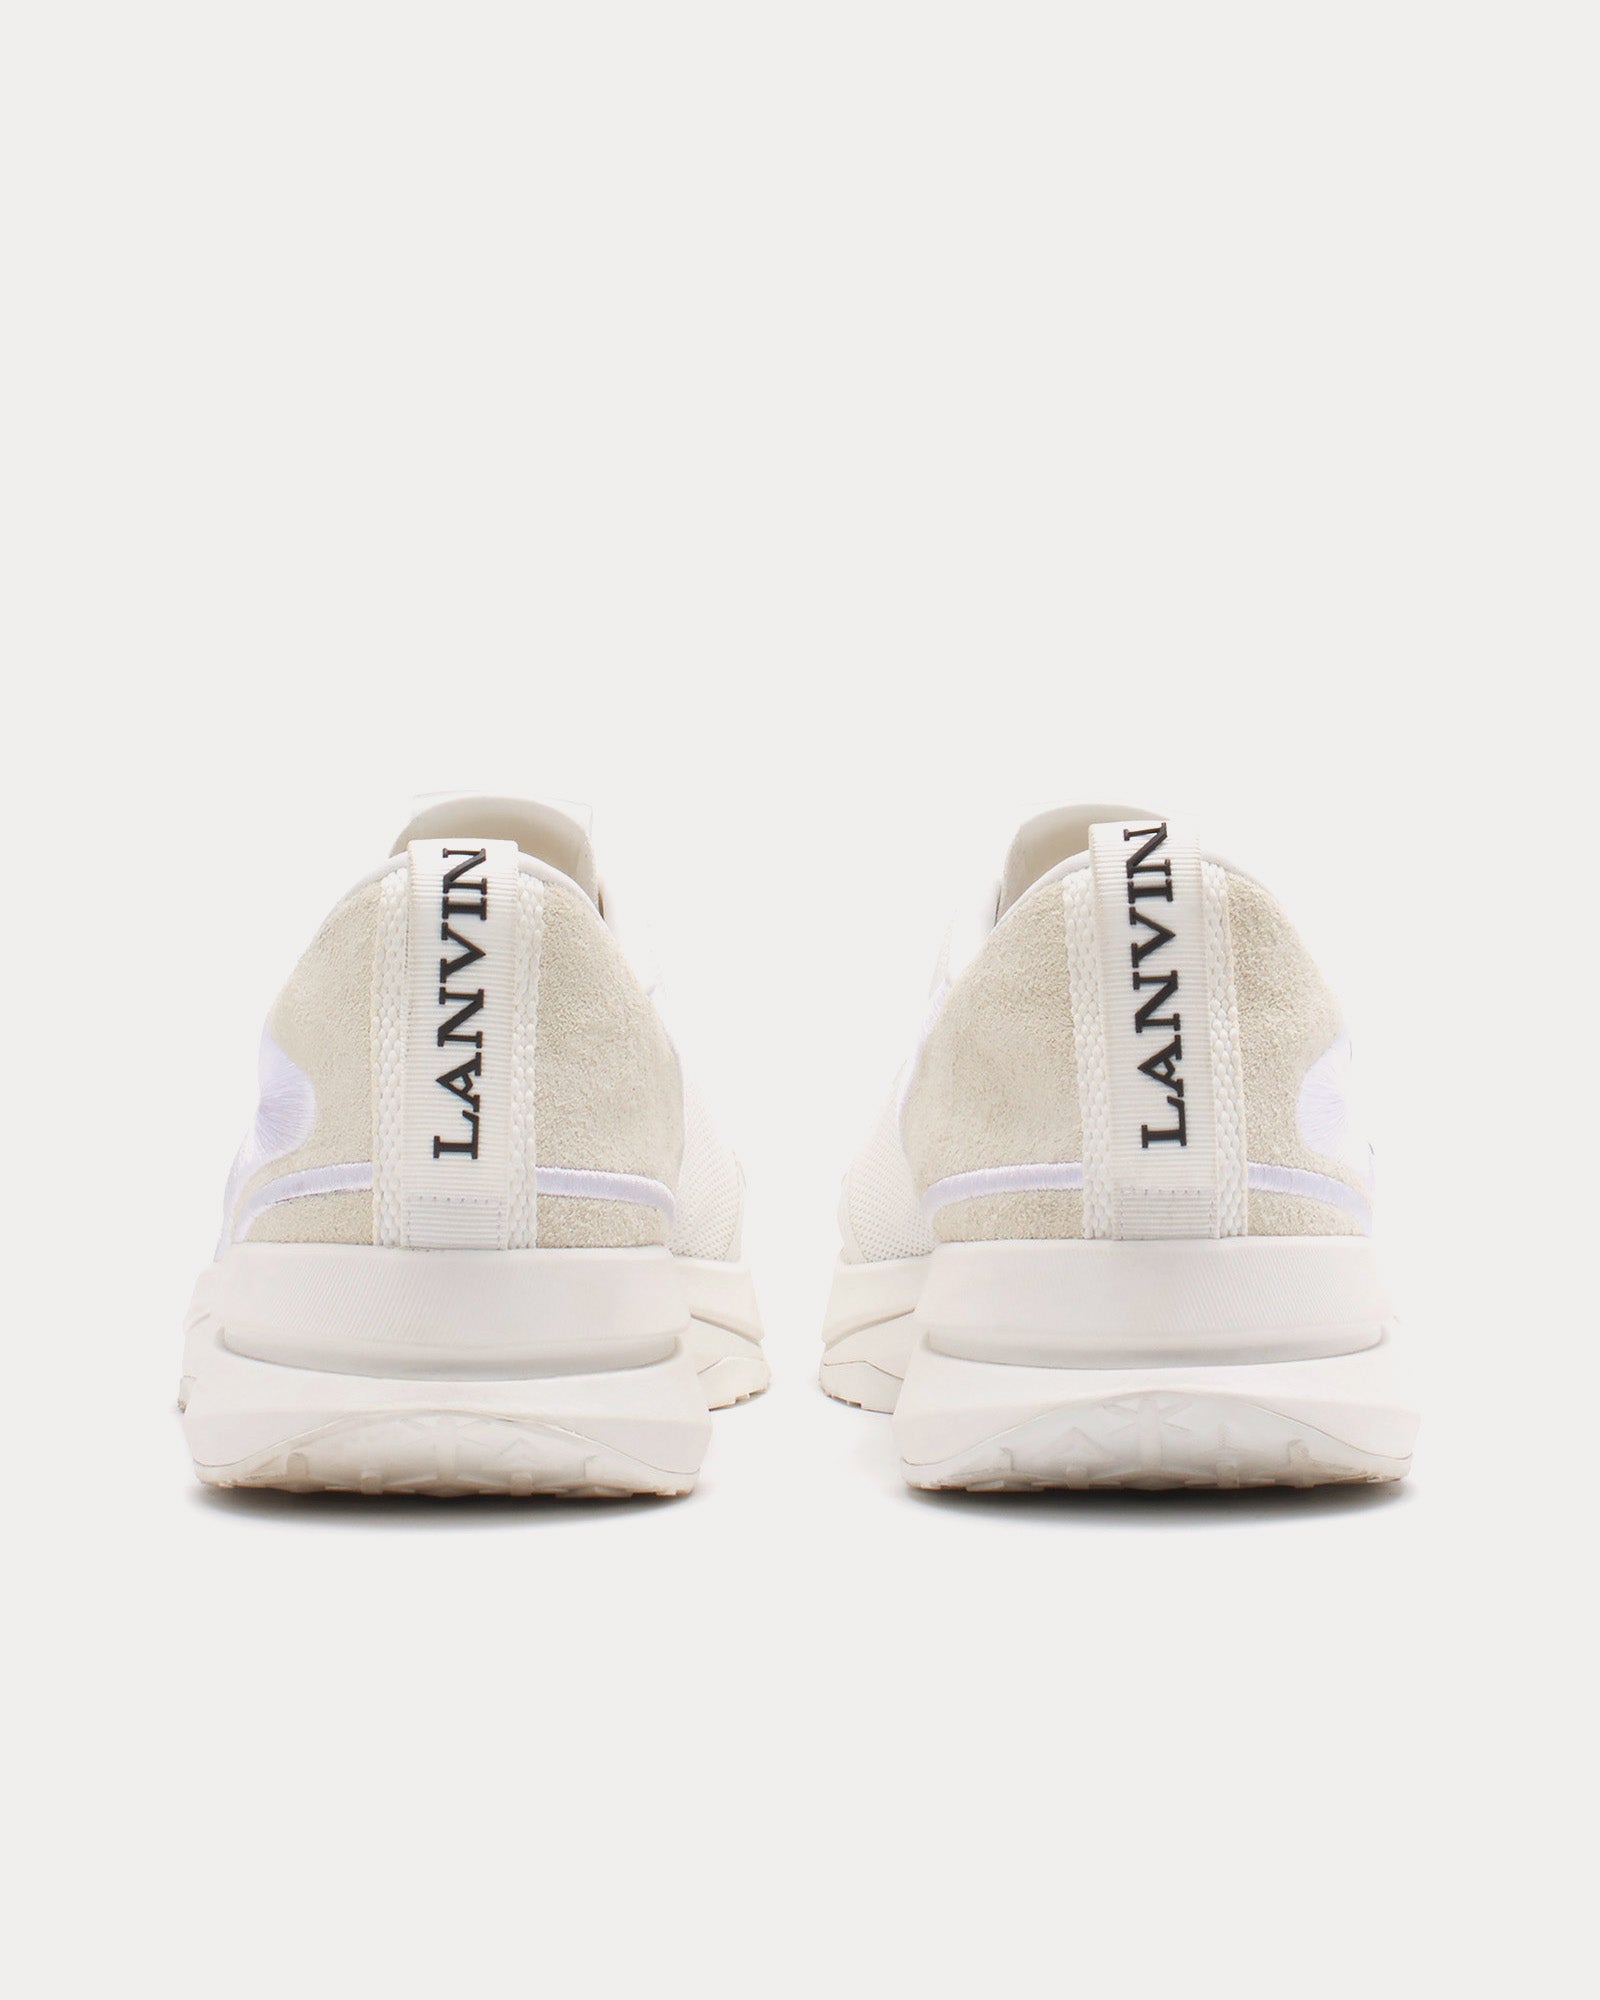 Lanvin - L-I Mesh White / White Low Top Sneakers